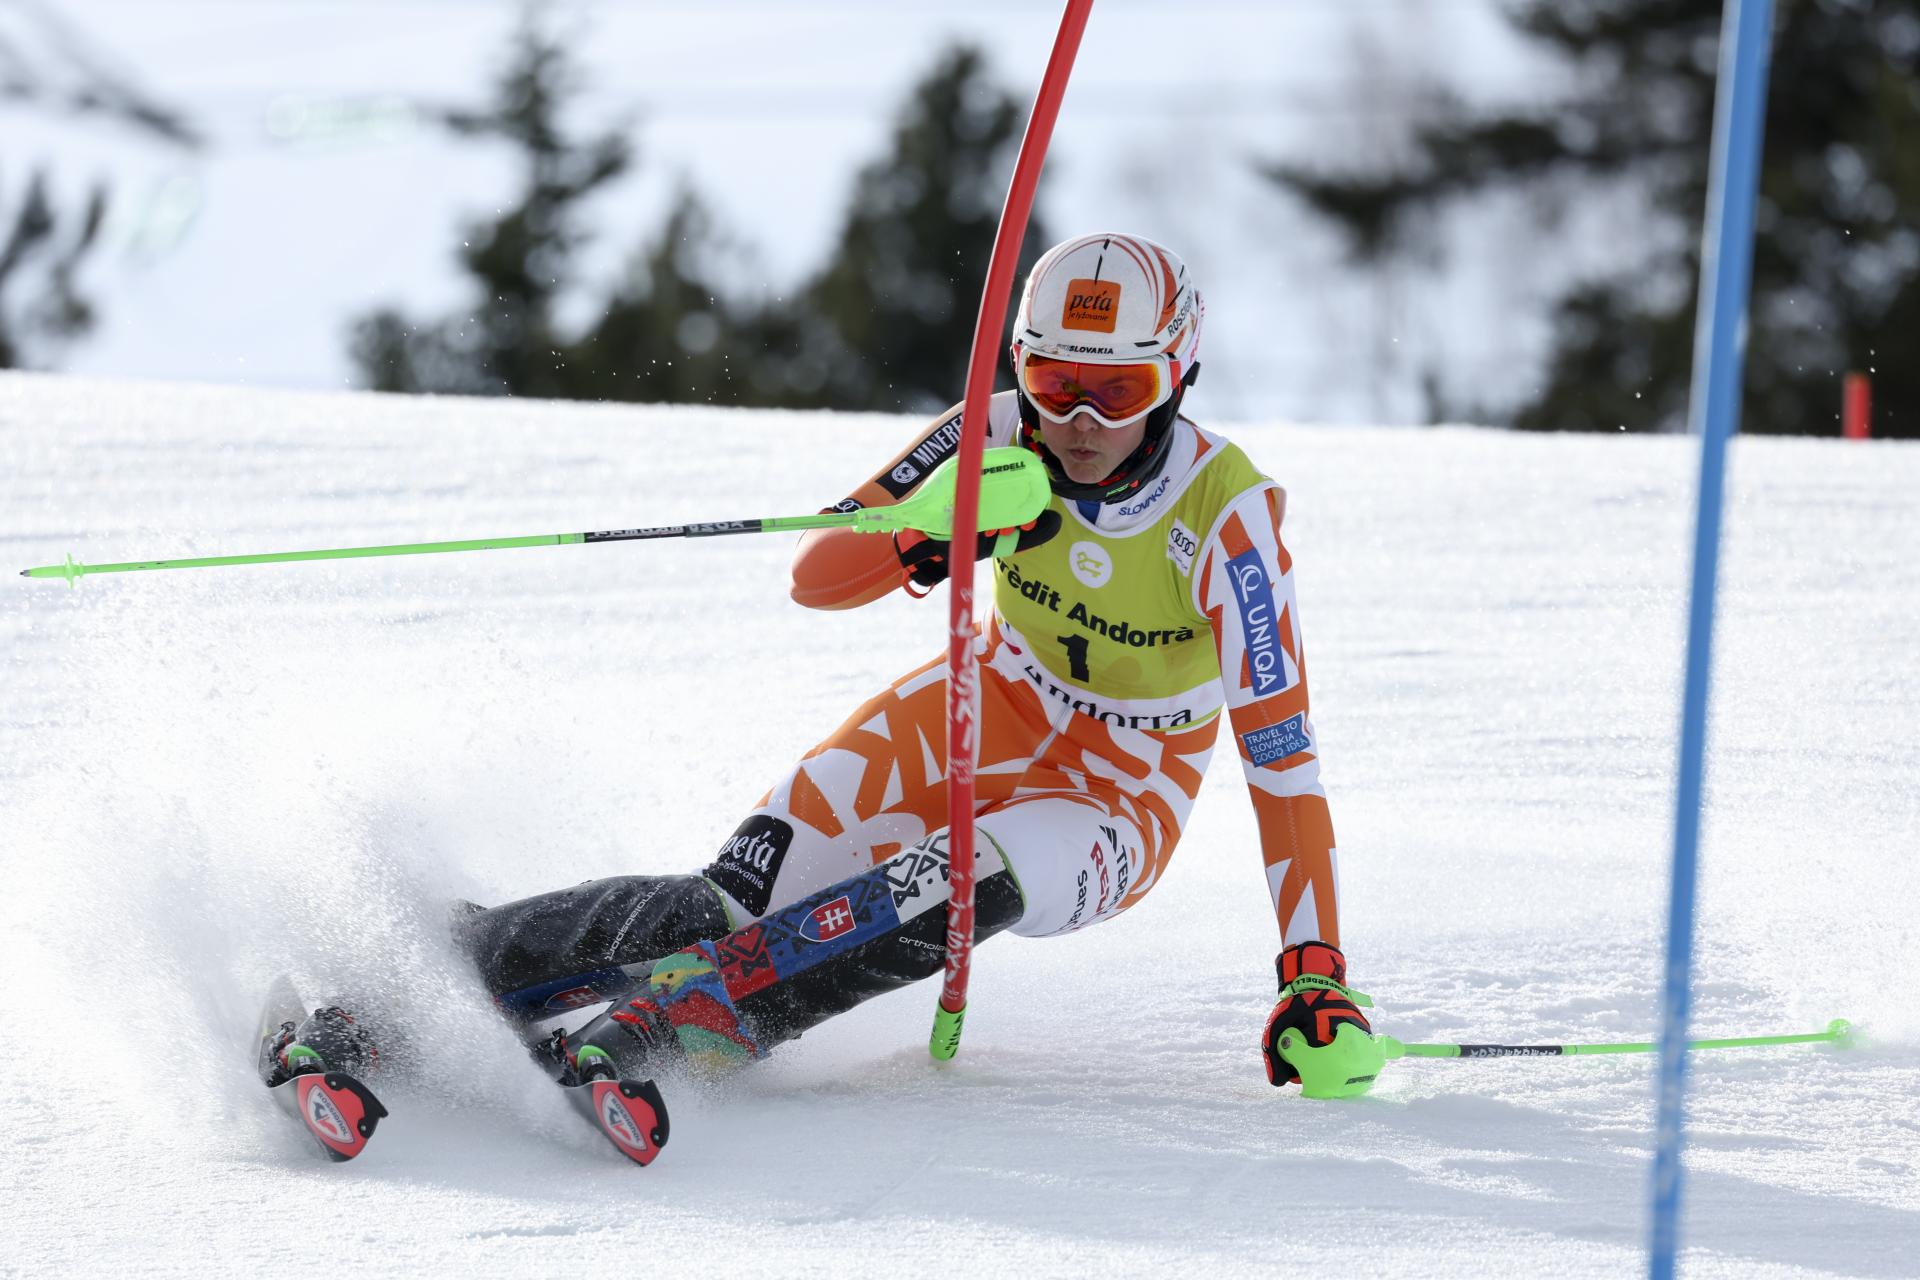 Vlhová ovládla slalom v Andorre. Dosiahla druhé víťazstvo v sezóne